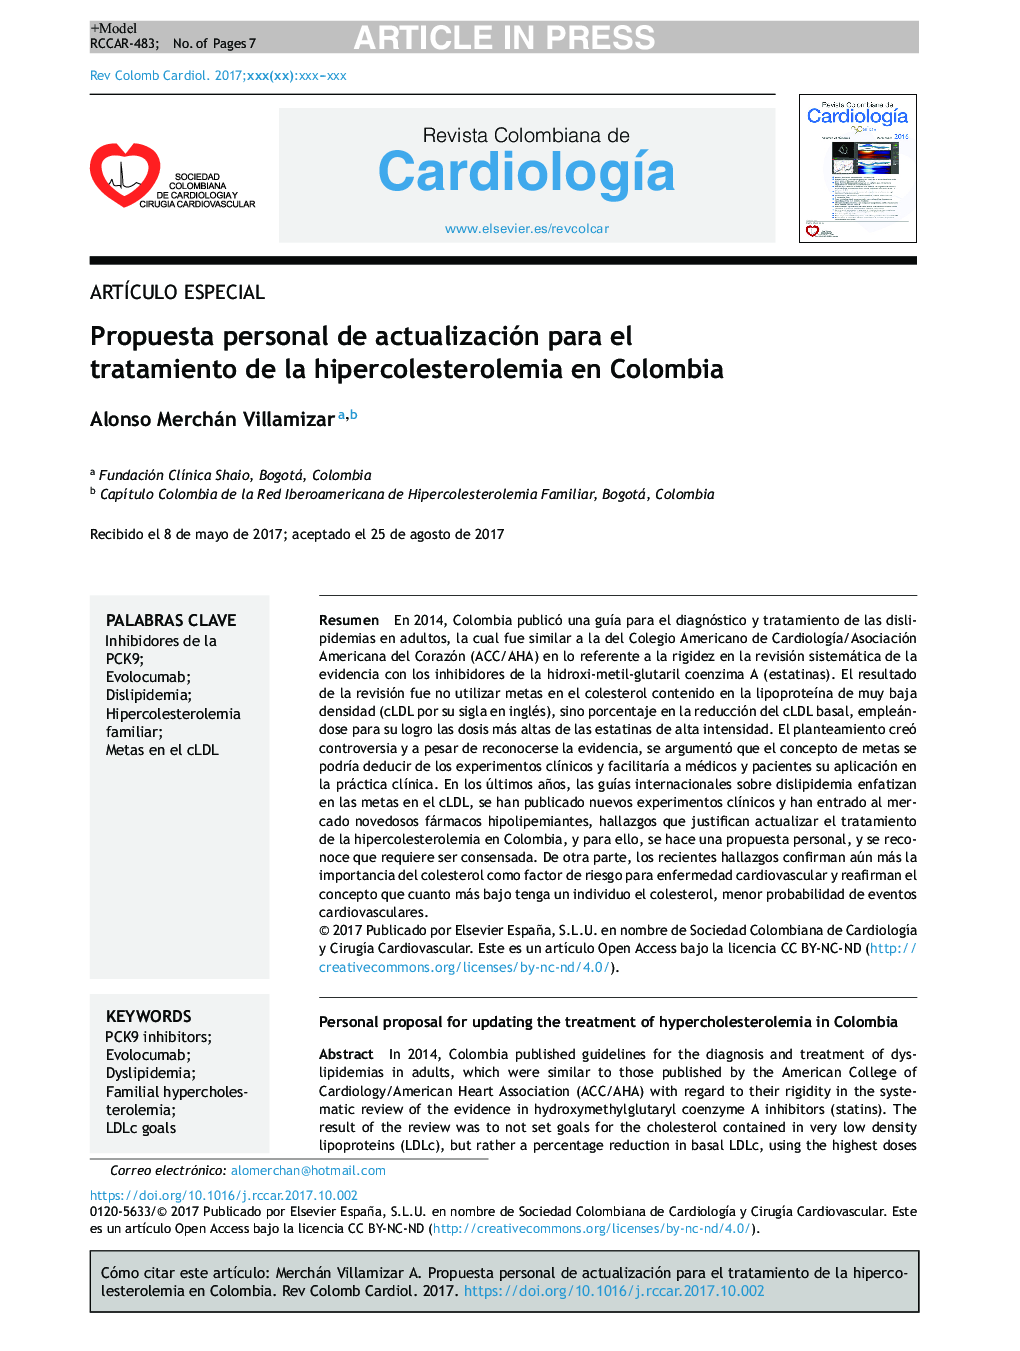 Propuesta personal de actualización para el tratamiento de la hipercolesterolemia en Colombia